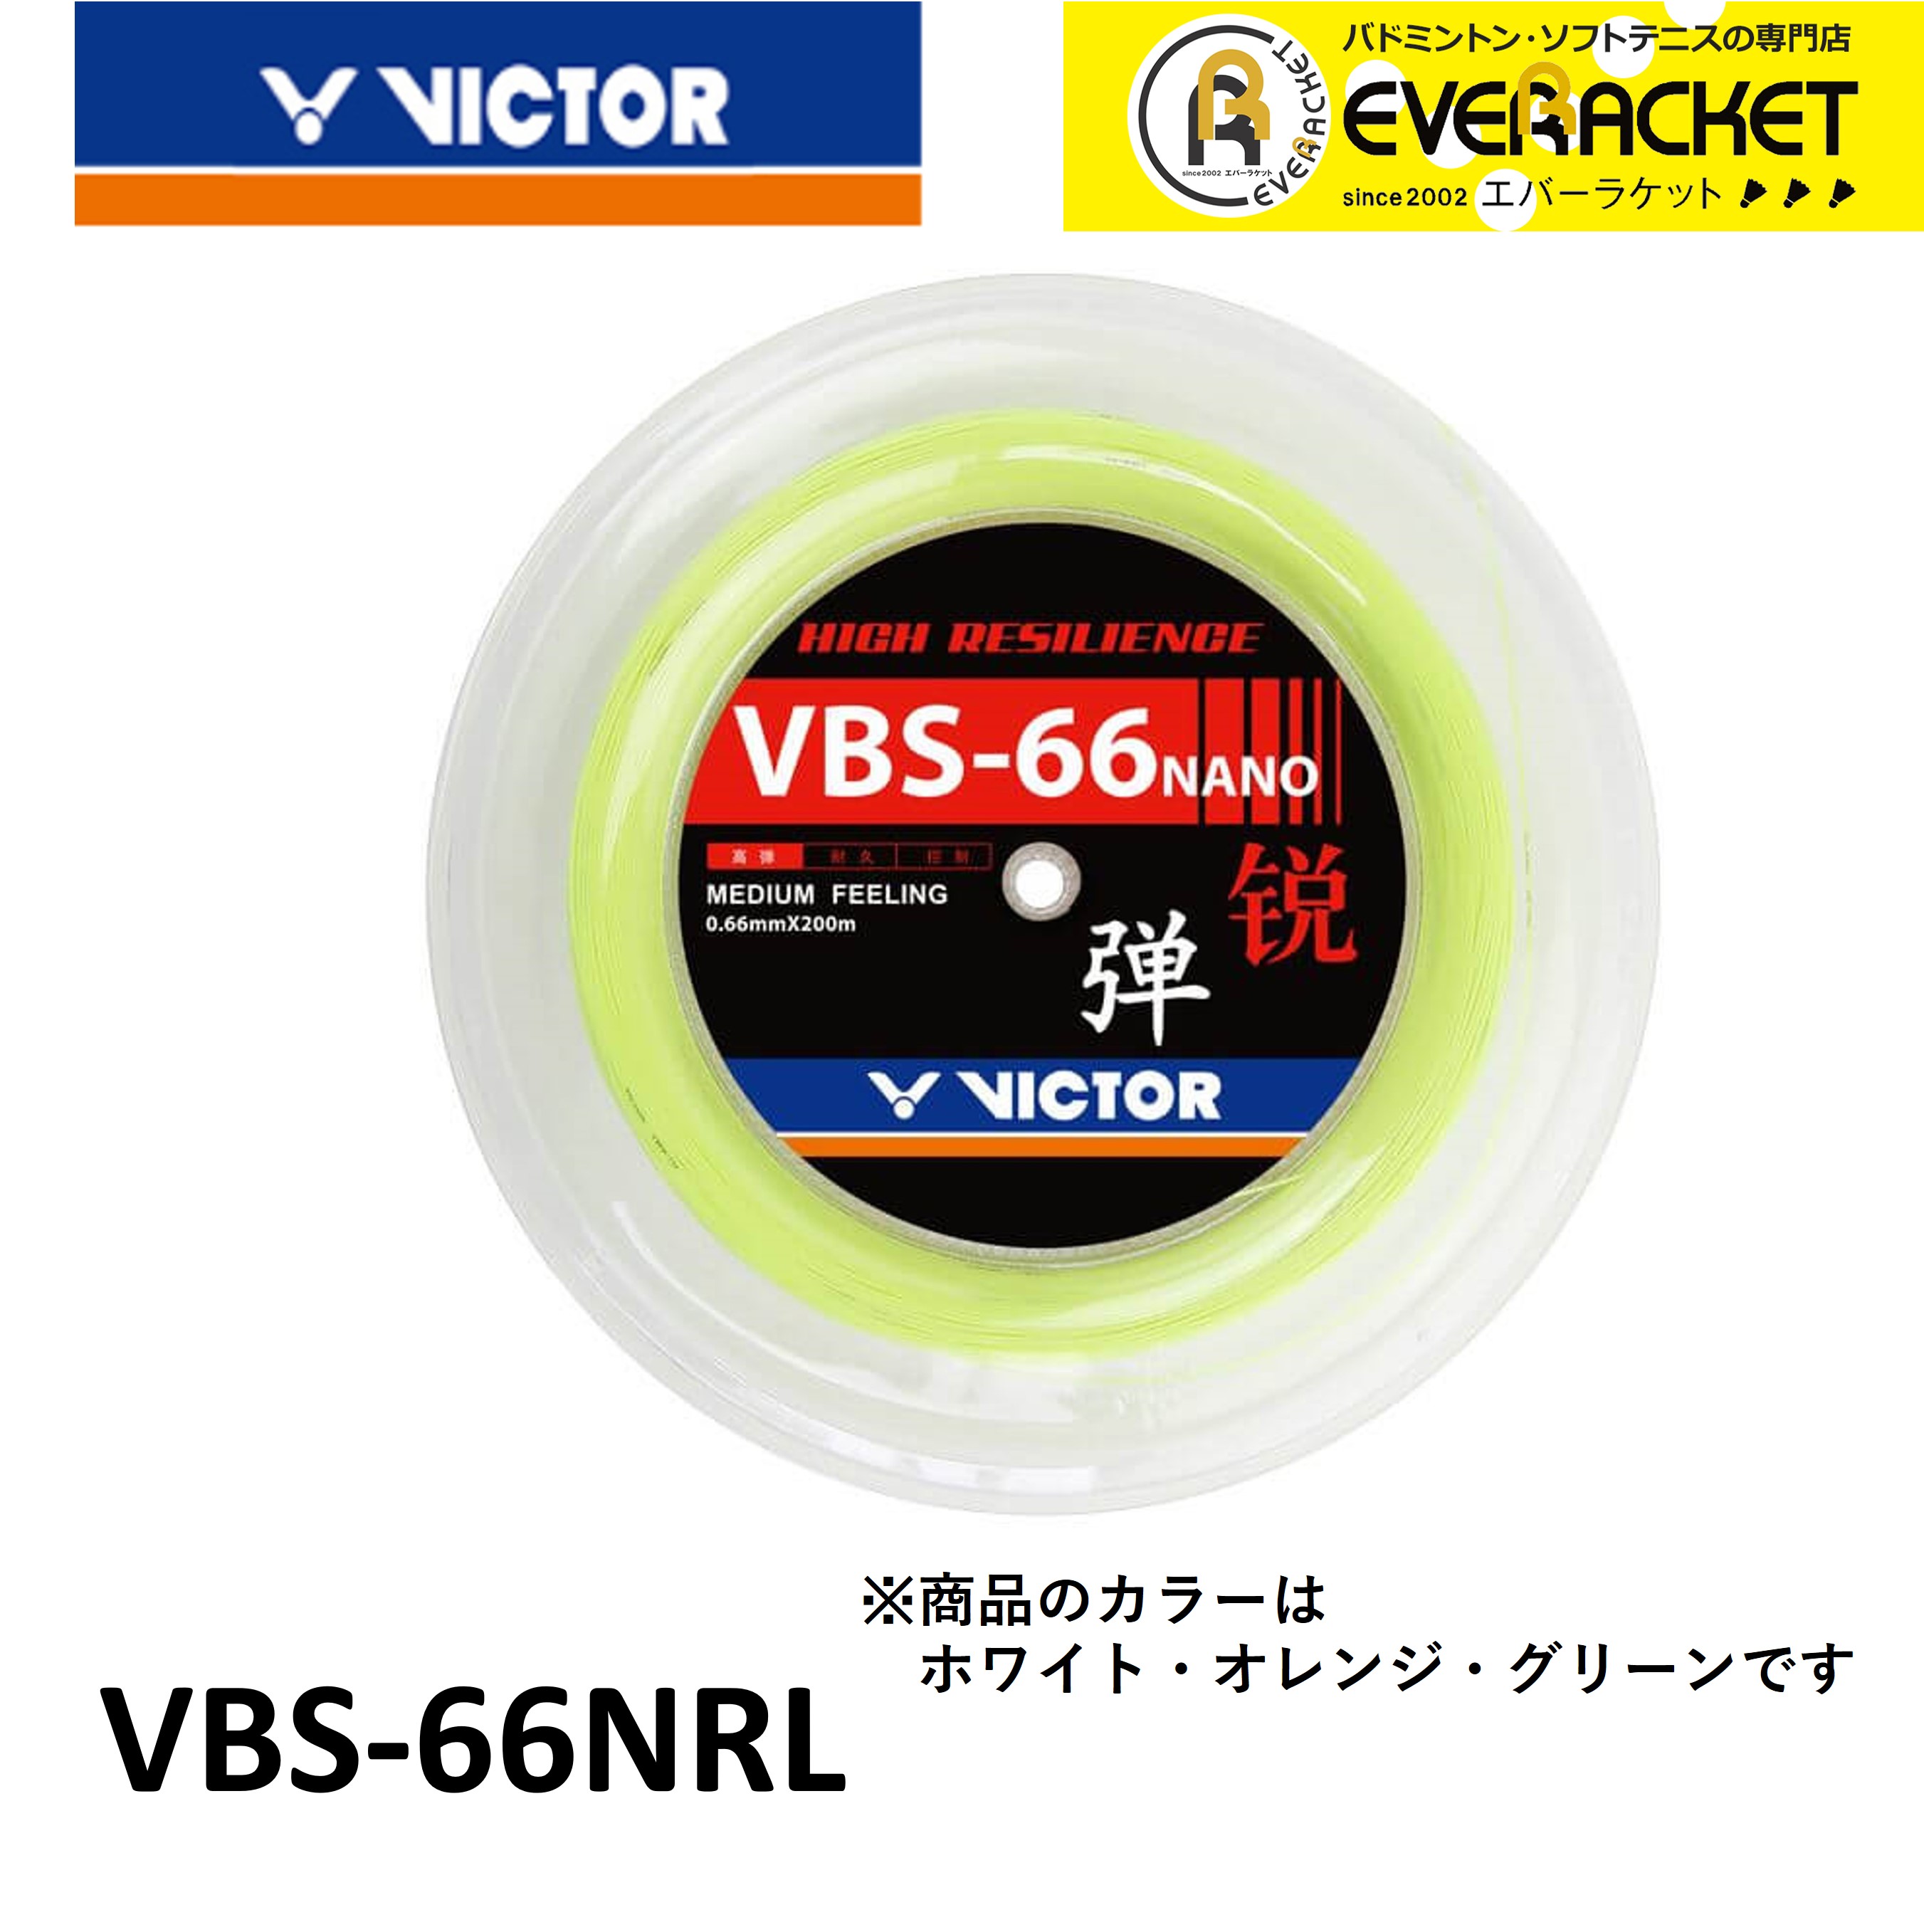 ビクター VICTOR バドミントンストリング VBS-66Nrl VBS-66Nrl バドミントン